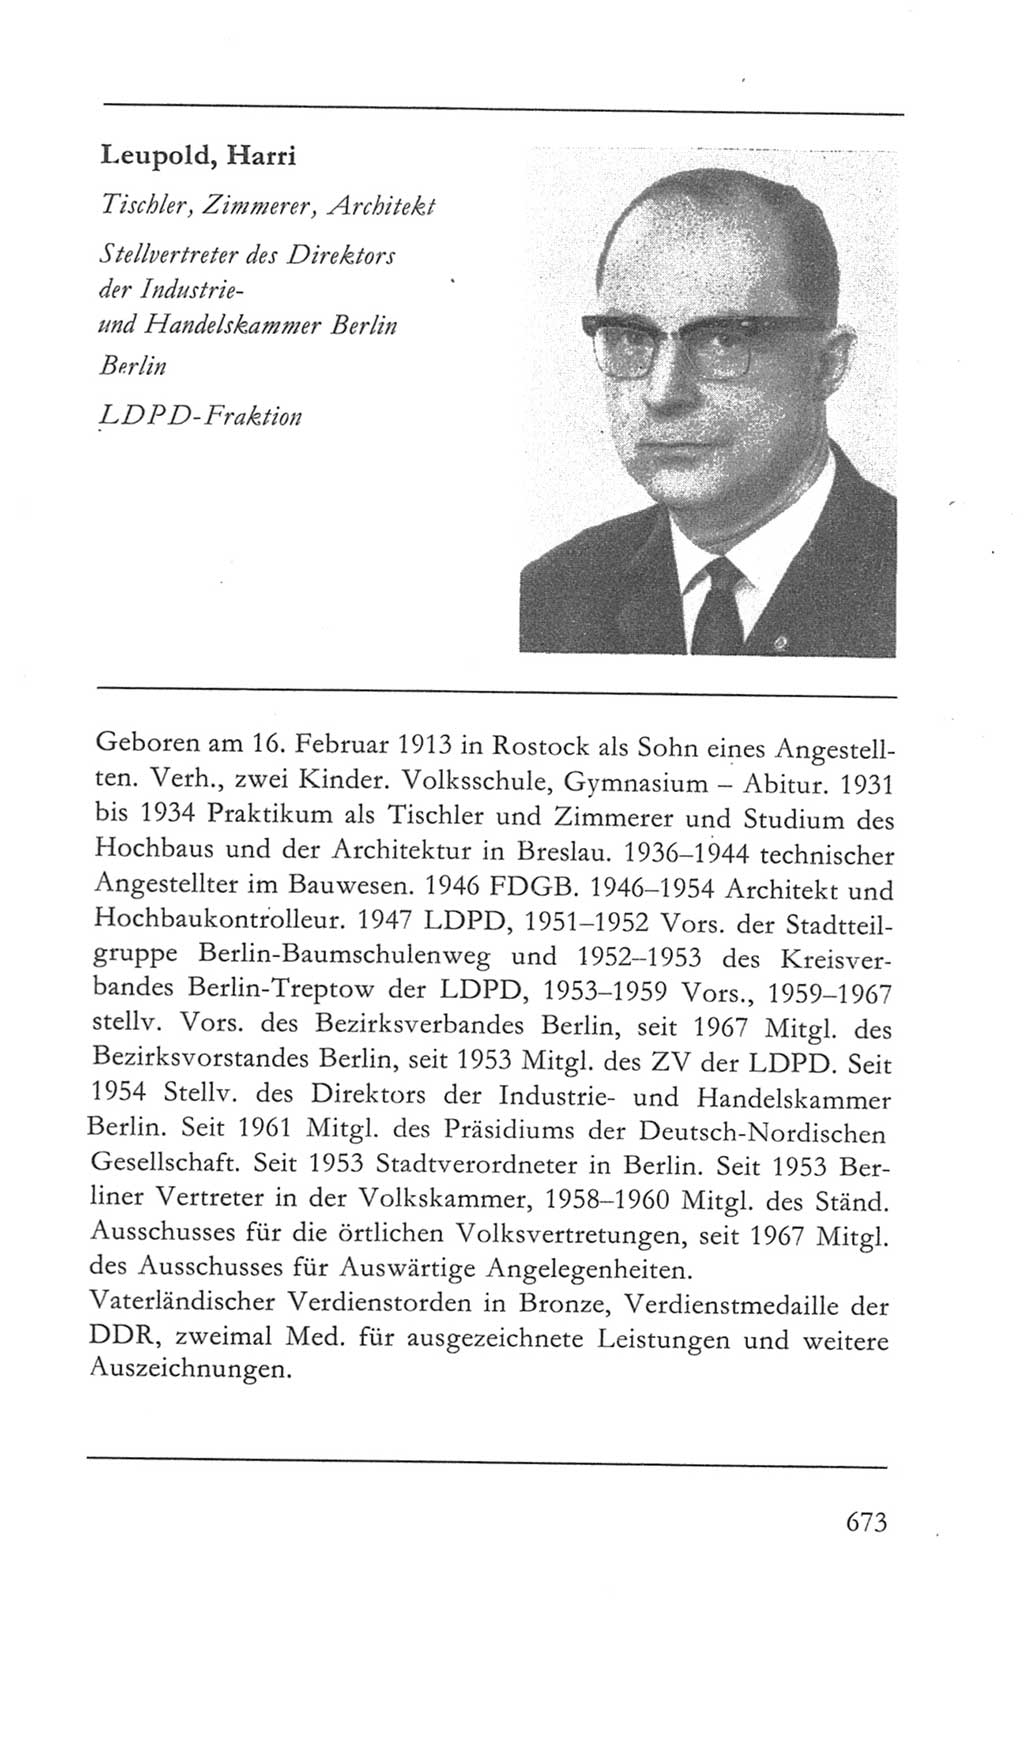 Volkskammer (VK) der Deutschen Demokratischen Republik (DDR) 5. Wahlperiode 1967-1971, Seite 673 (VK. DDR 5. WP. 1967-1971, S. 673)